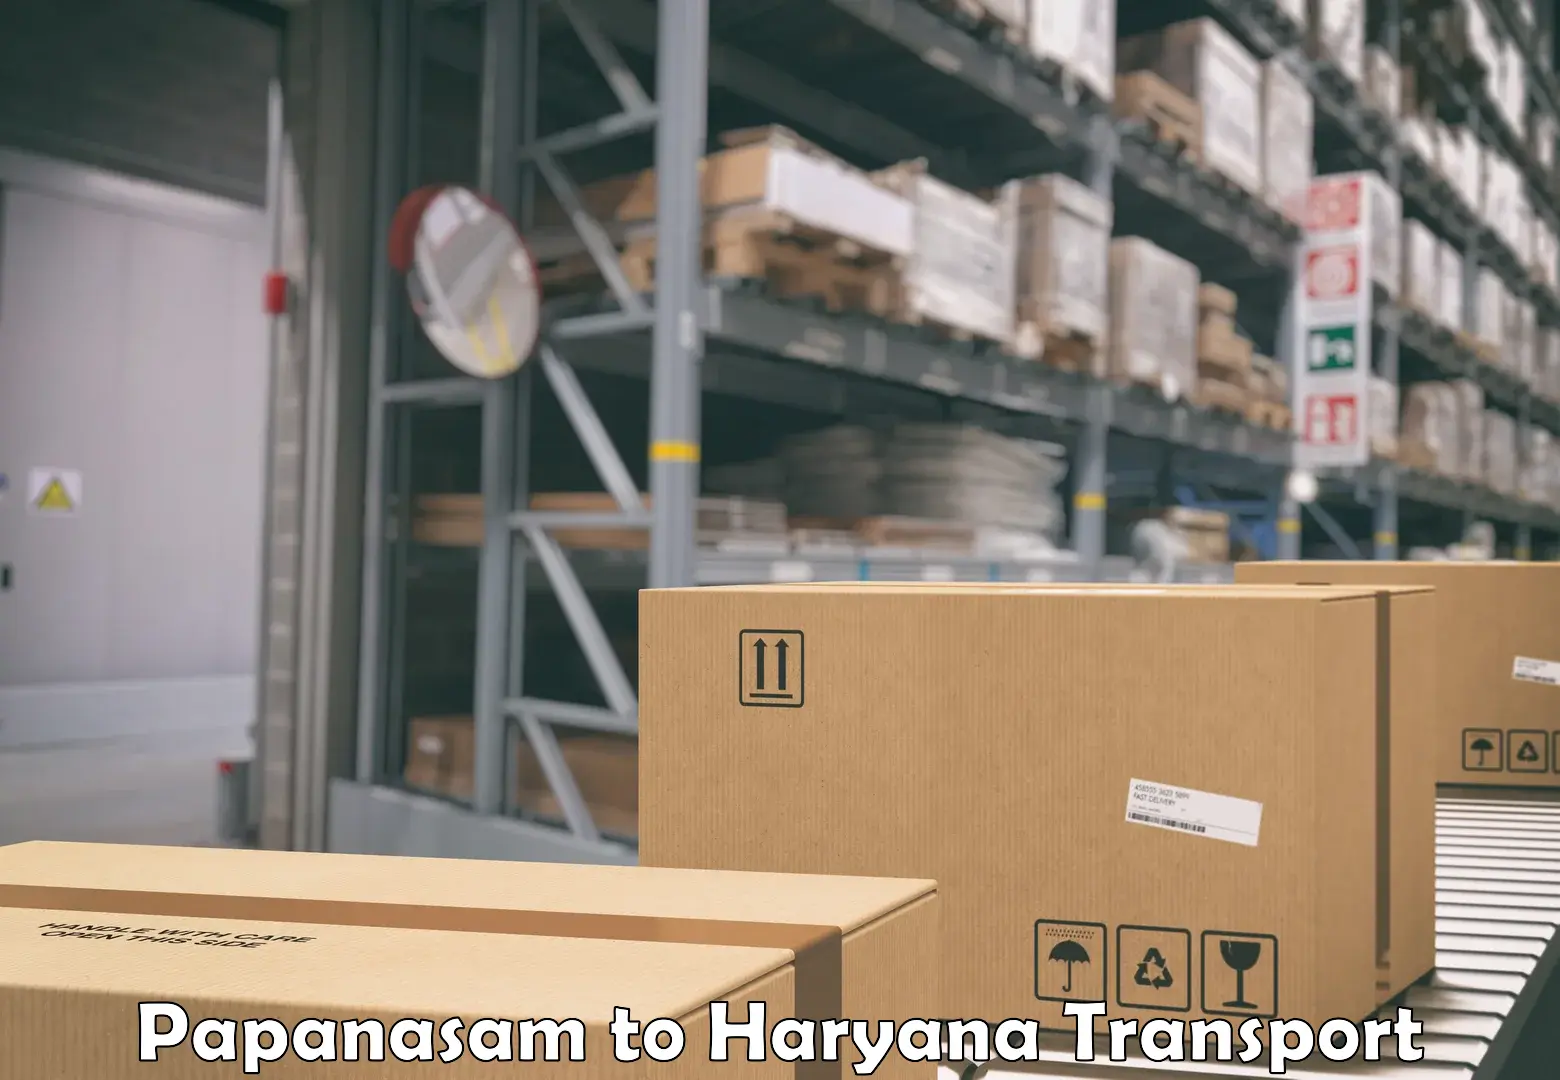 Pick up transport service Papanasam to Chaudhary Charan Singh Haryana Agricultural University Hisar